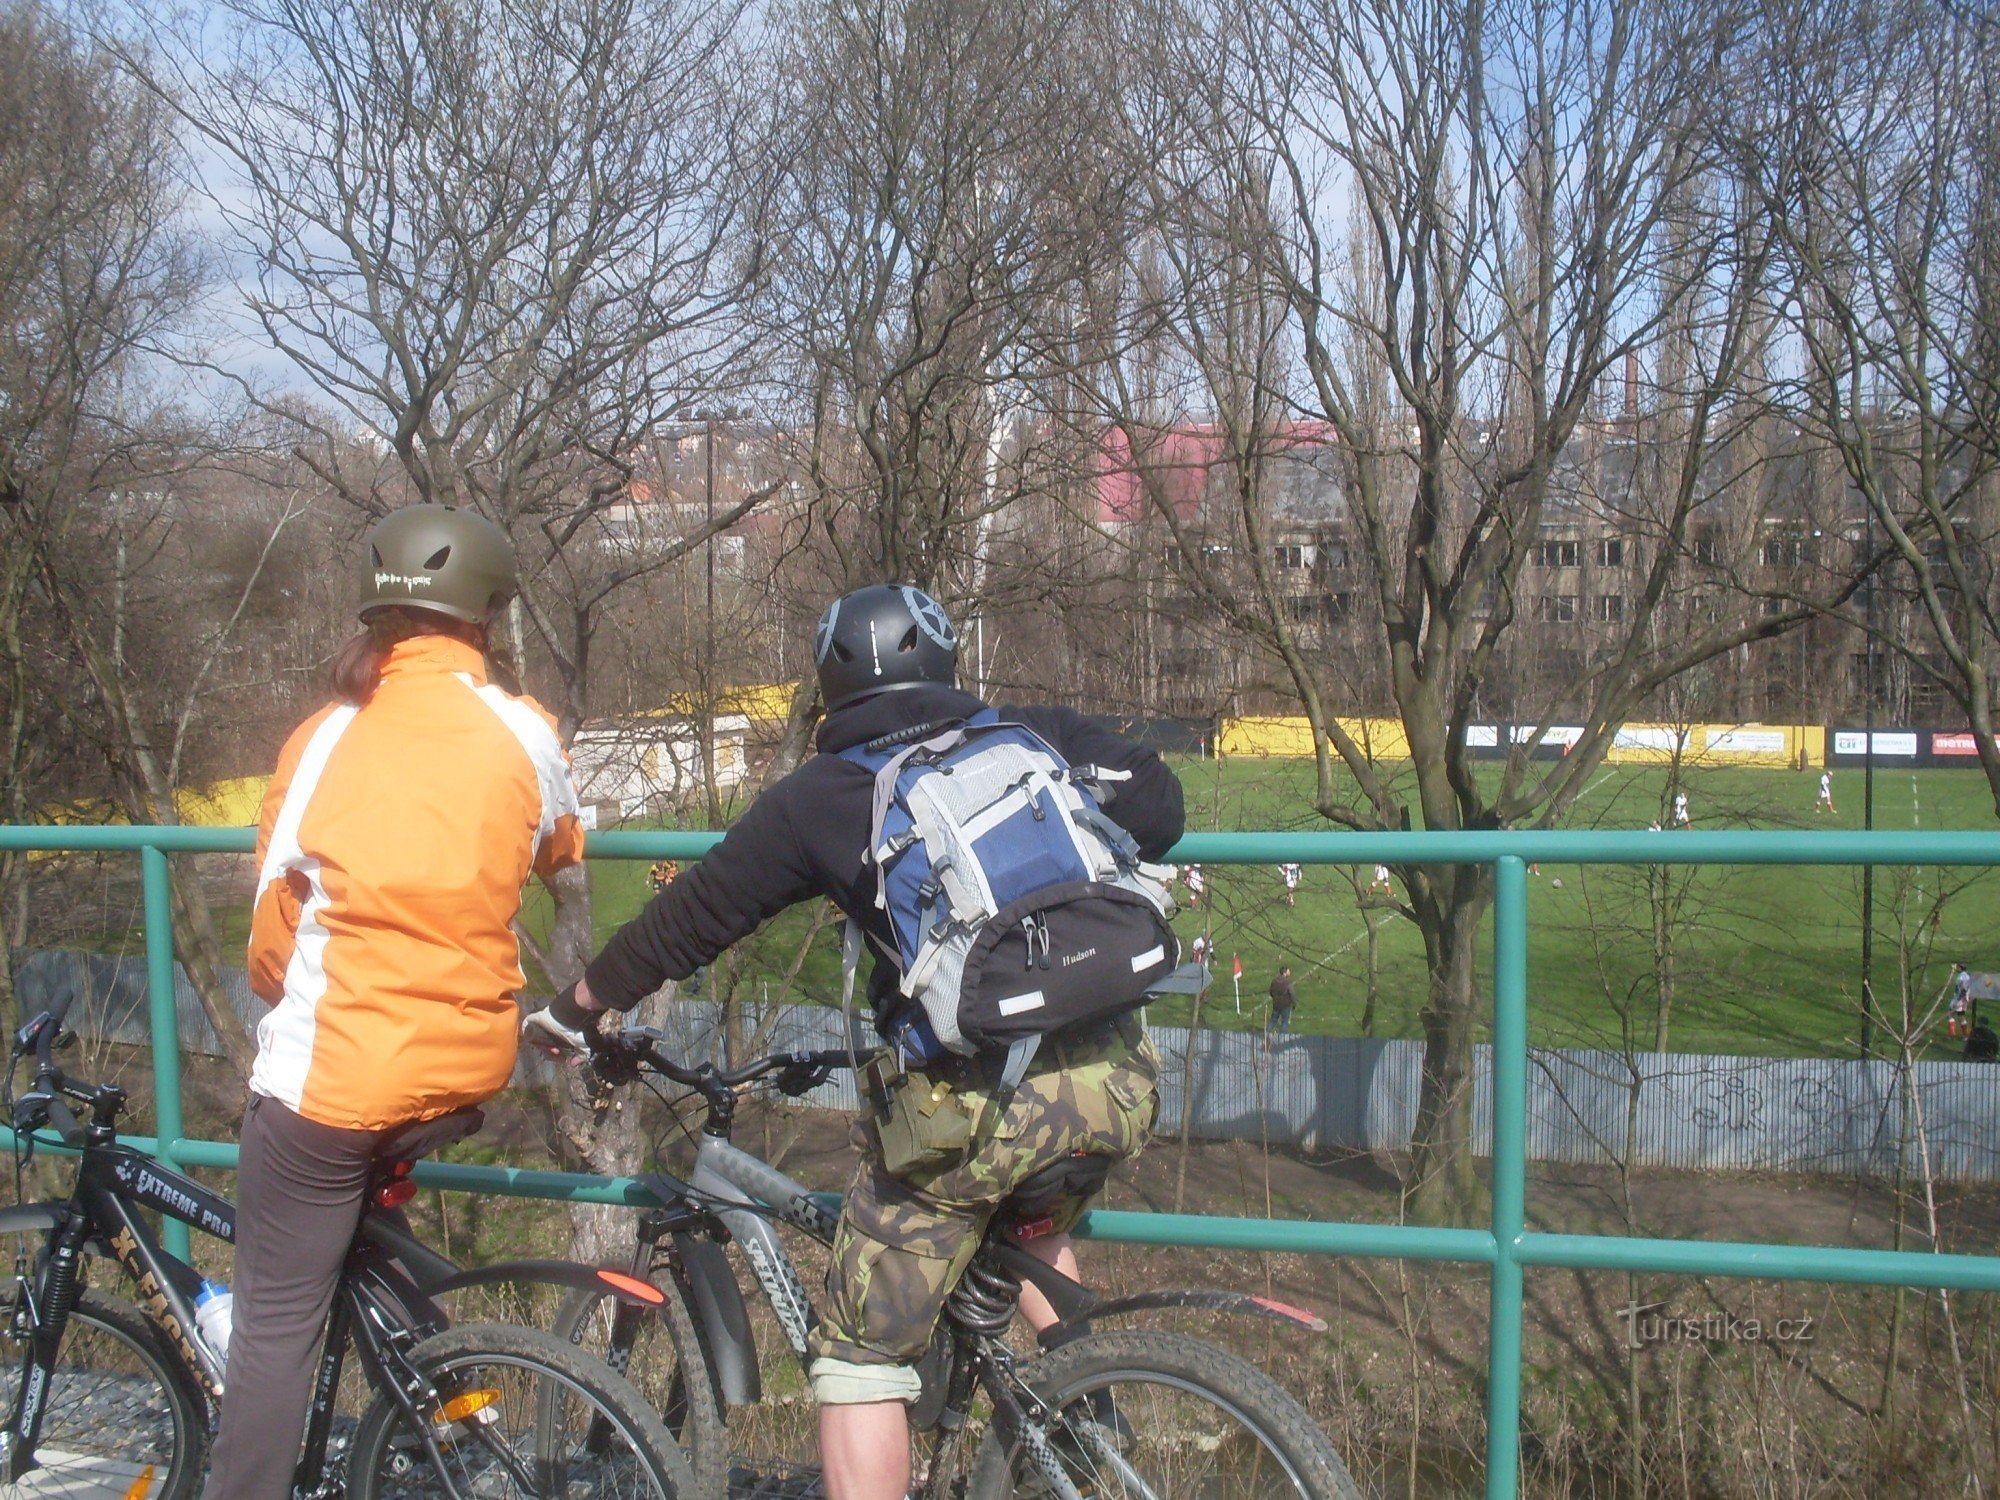 De asemenea, puteți urmări meciul cu o minge moale de pe pista de biciclete care duce de-a lungul vechii căi ferate